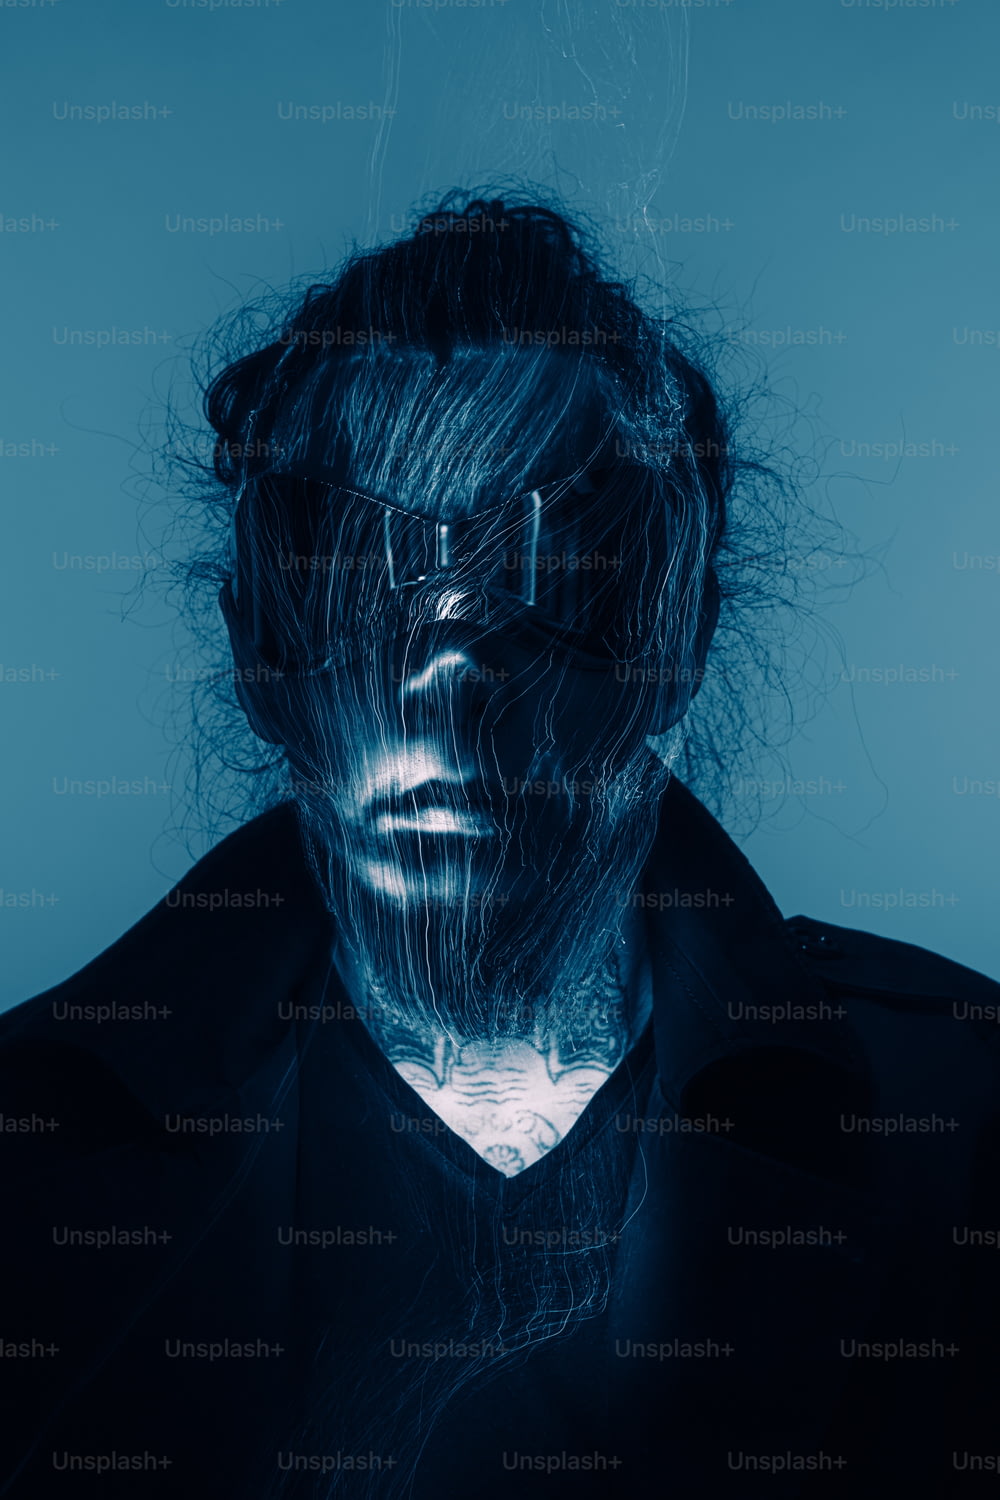 Das Gesicht eines Mannes ist mit blauem Licht bedeckt